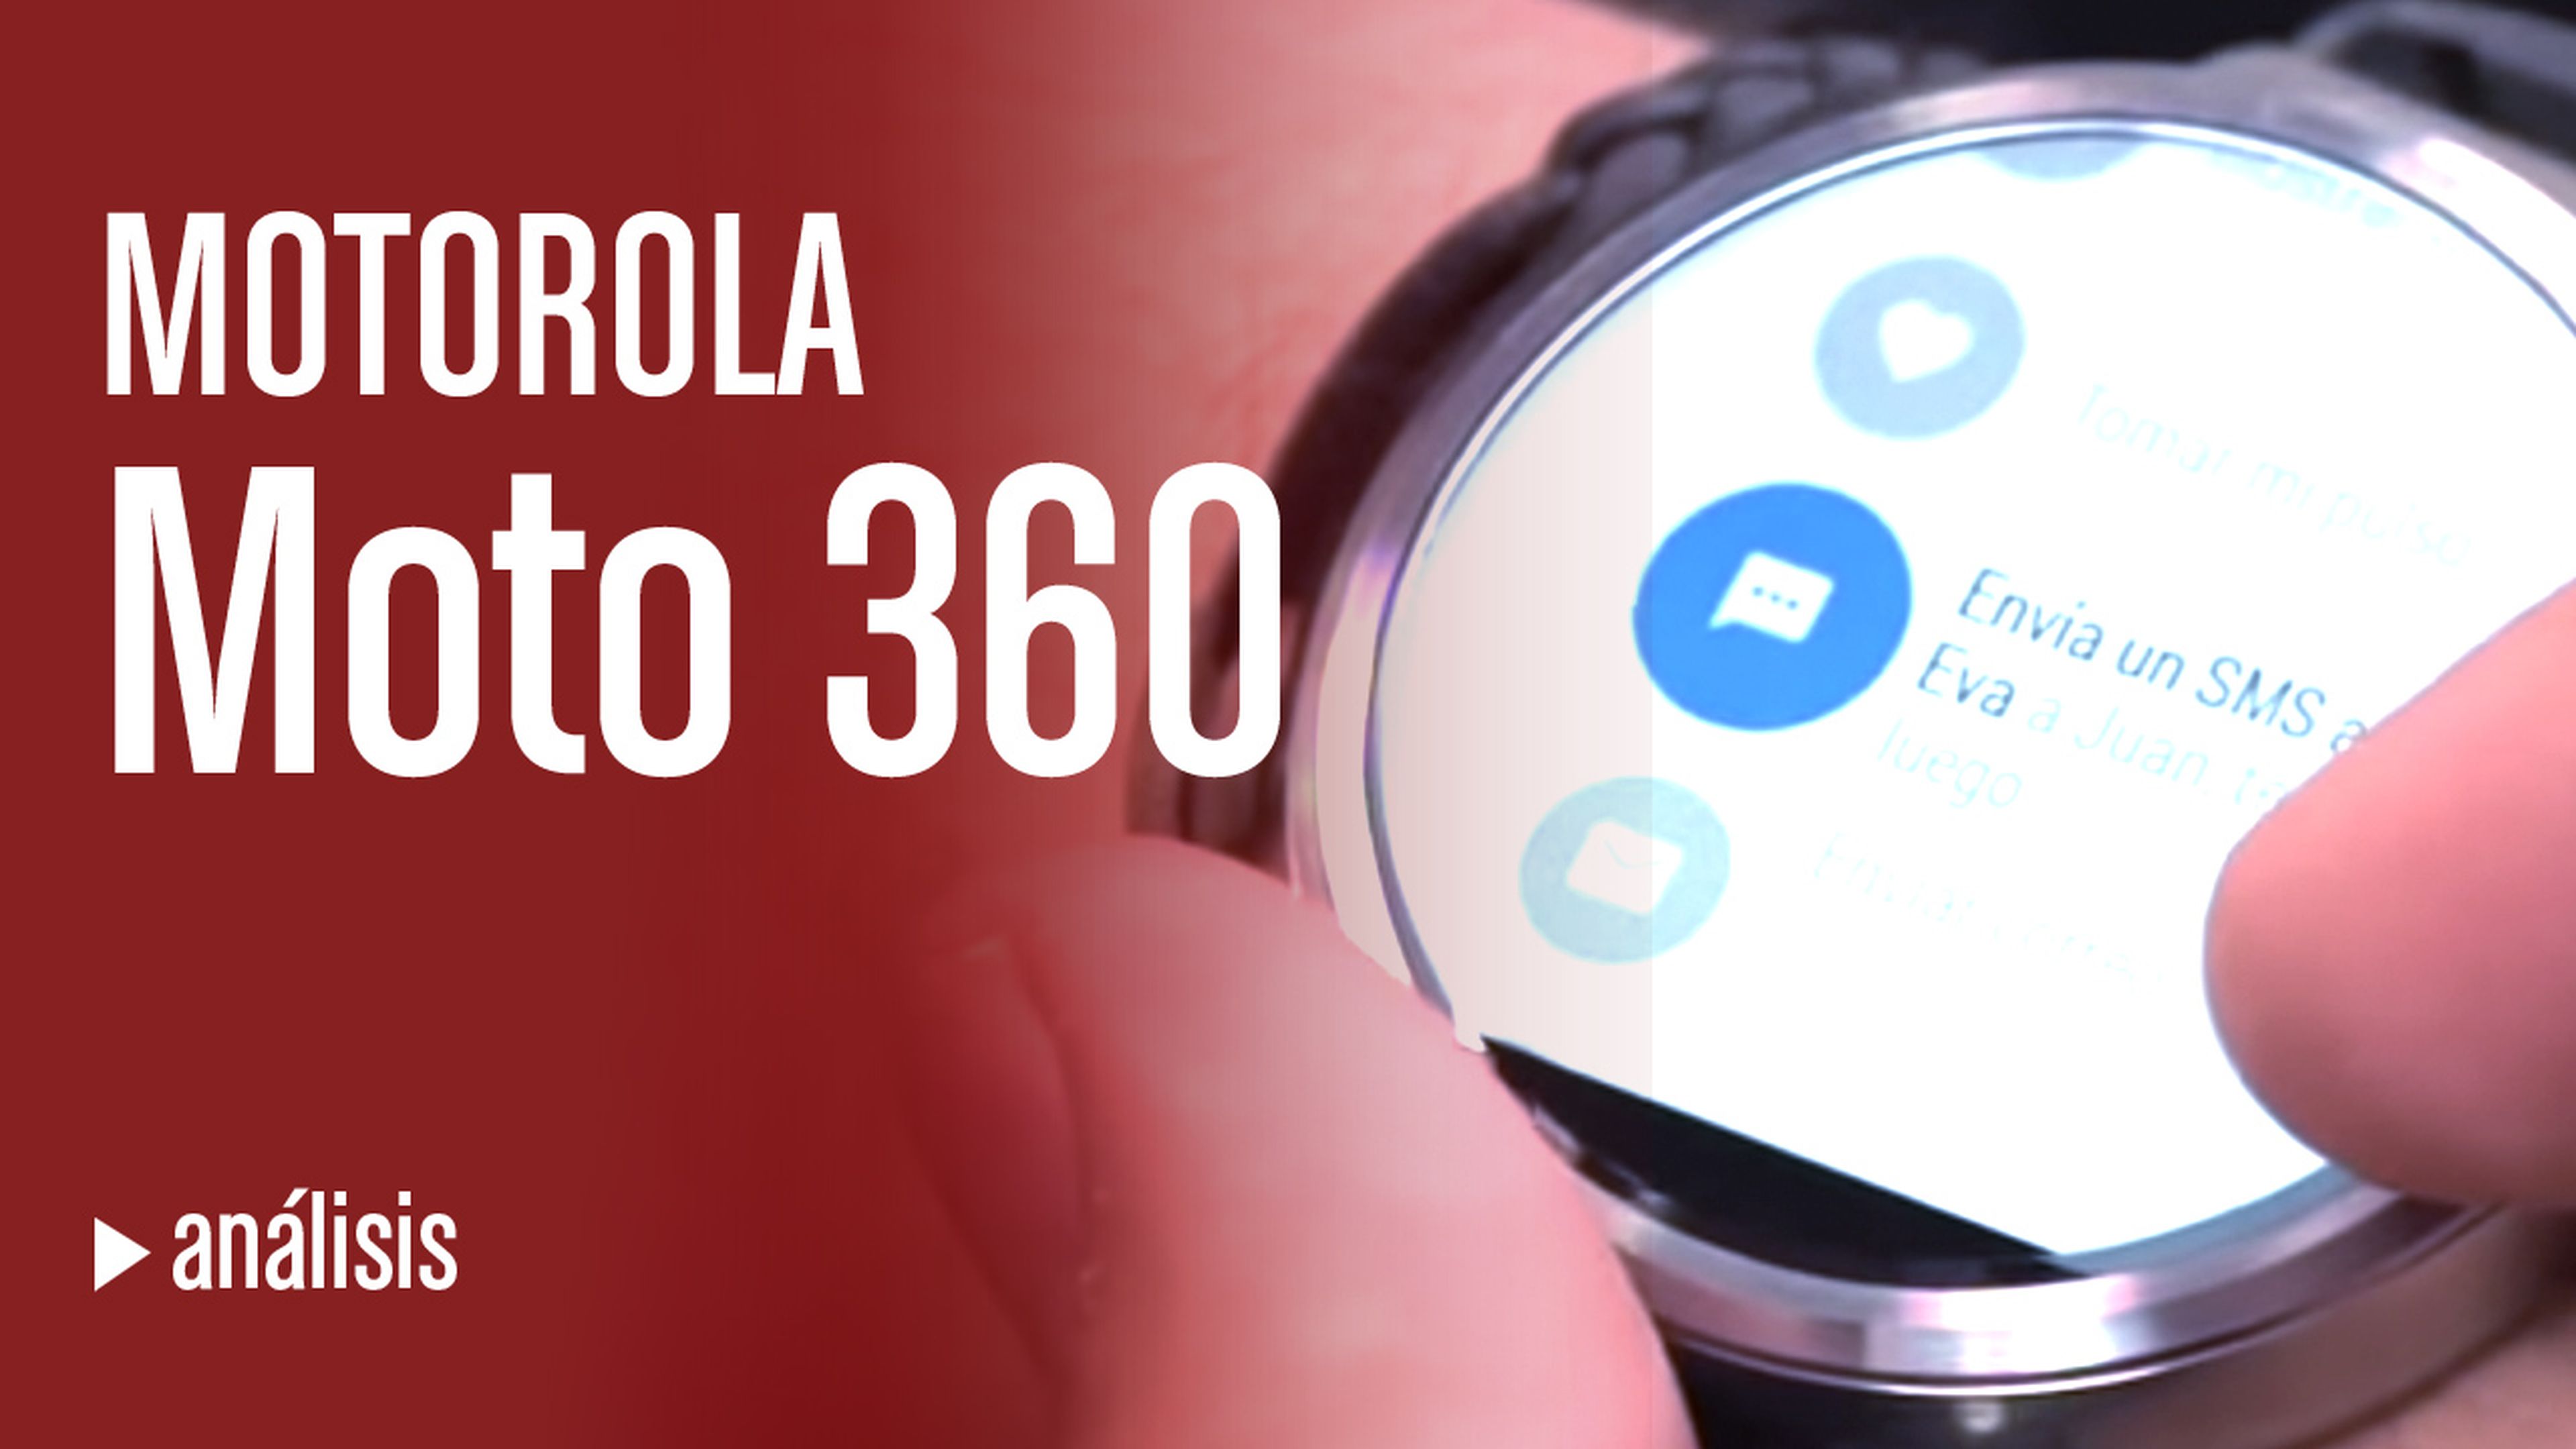 Videoanálisis del Moto 360, el smartwatch de Motorola